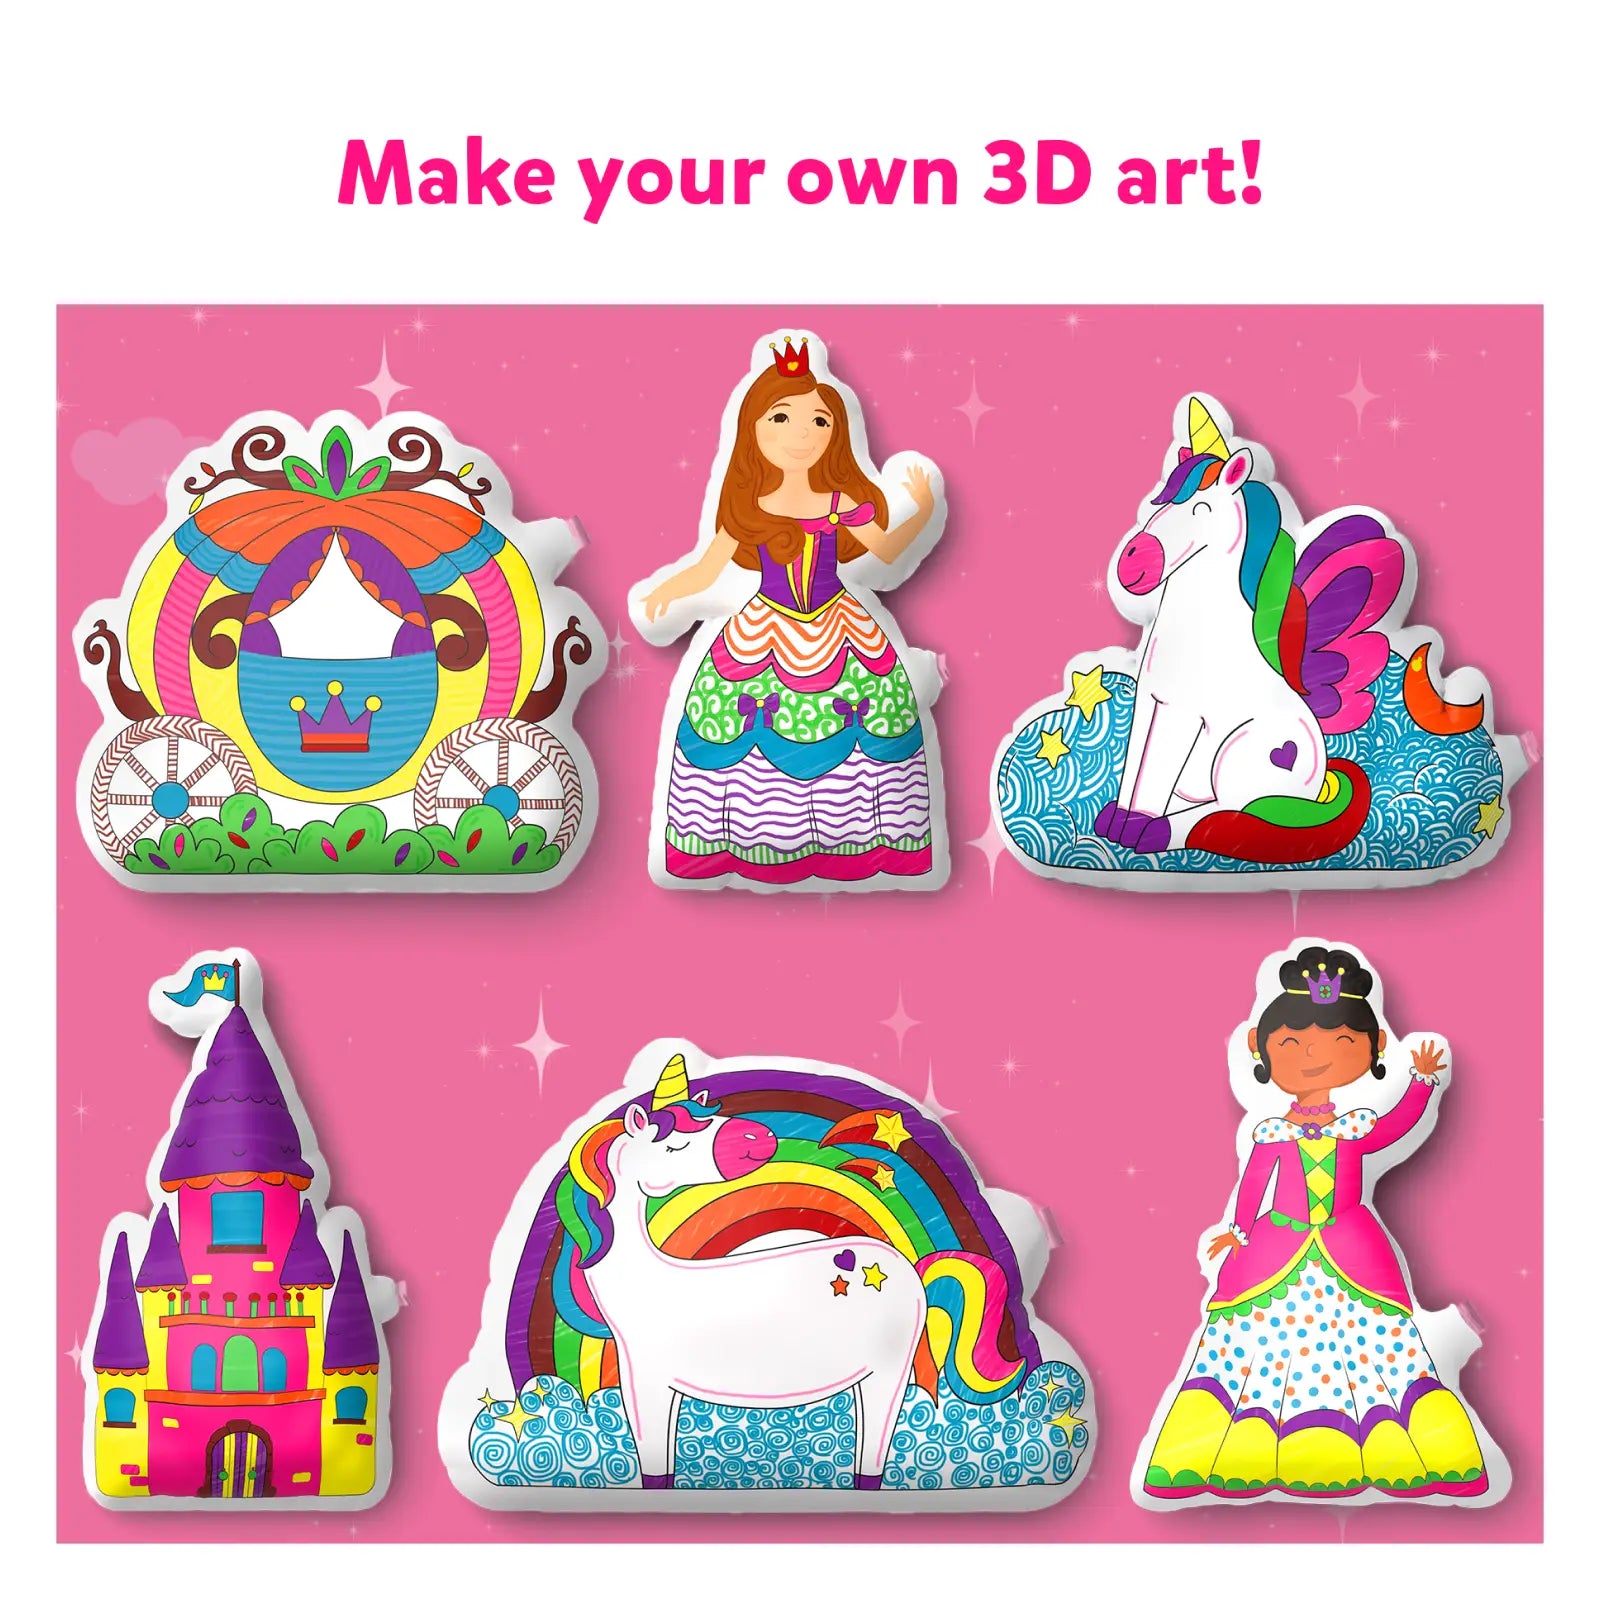 Inflatable Art - 3D Unicorns & Princesses (ages 4-7)